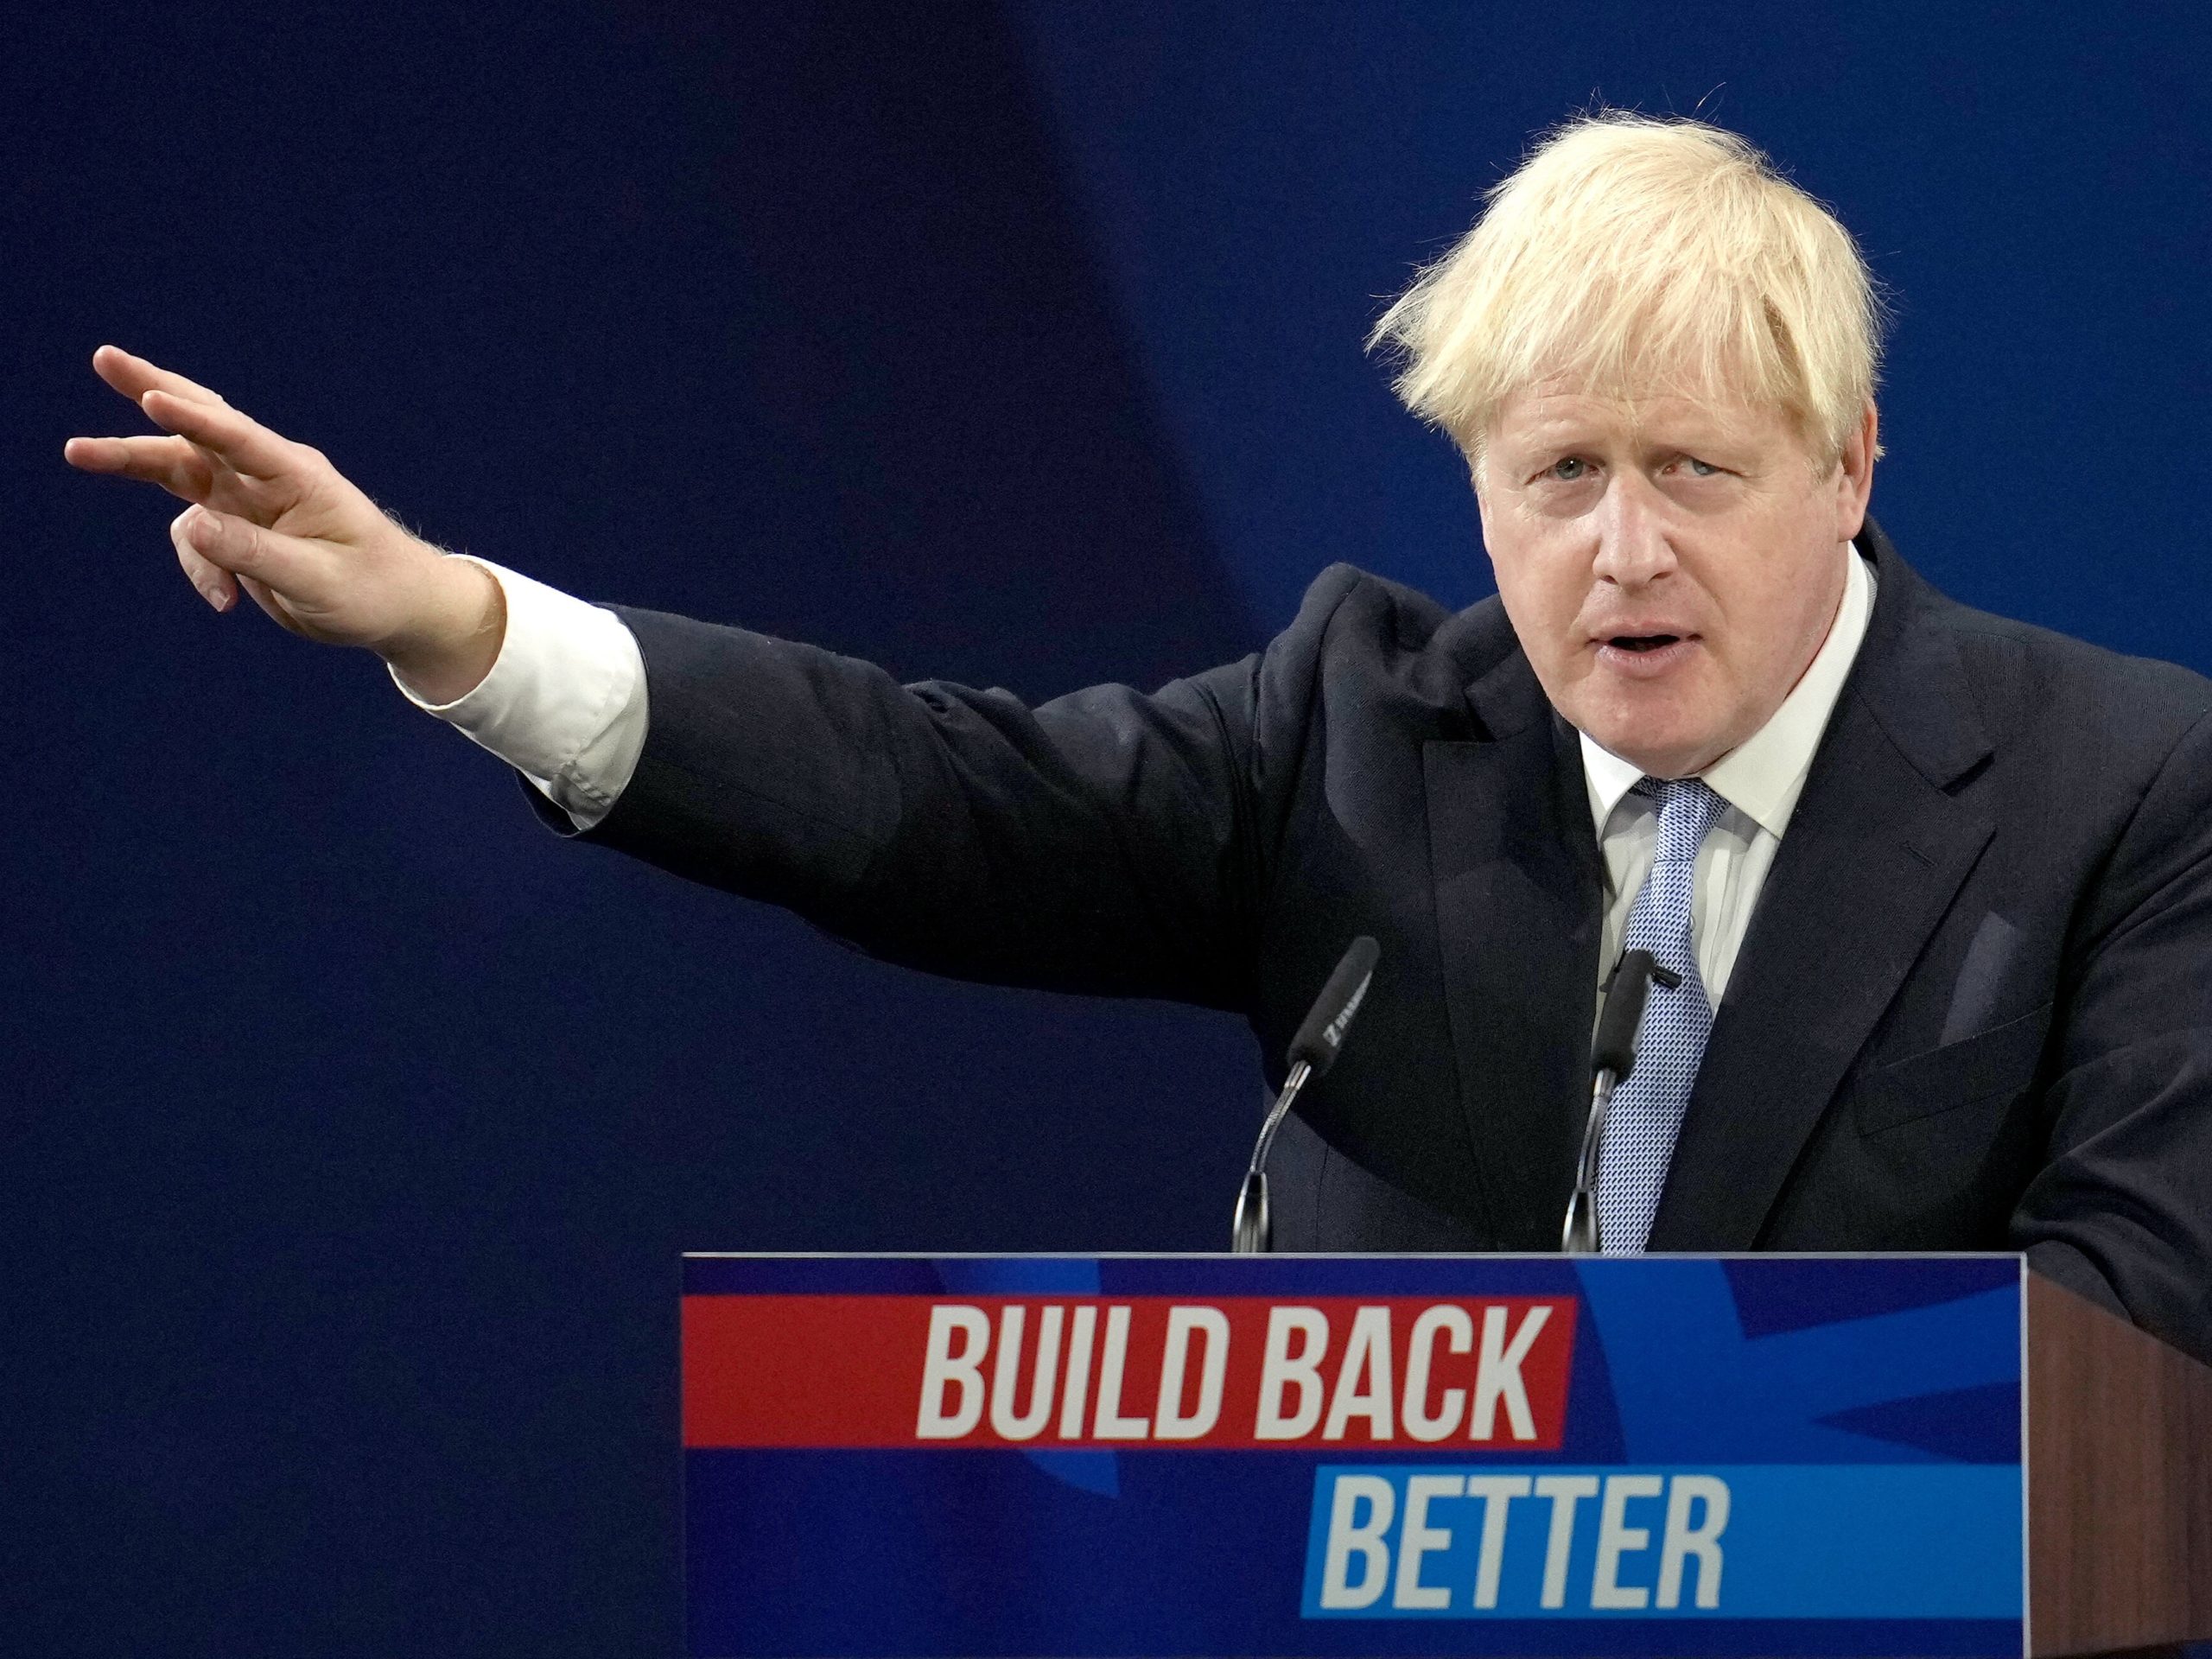 Reactions as Daily Express describes Boris Johnson as an ‘Iron Man’